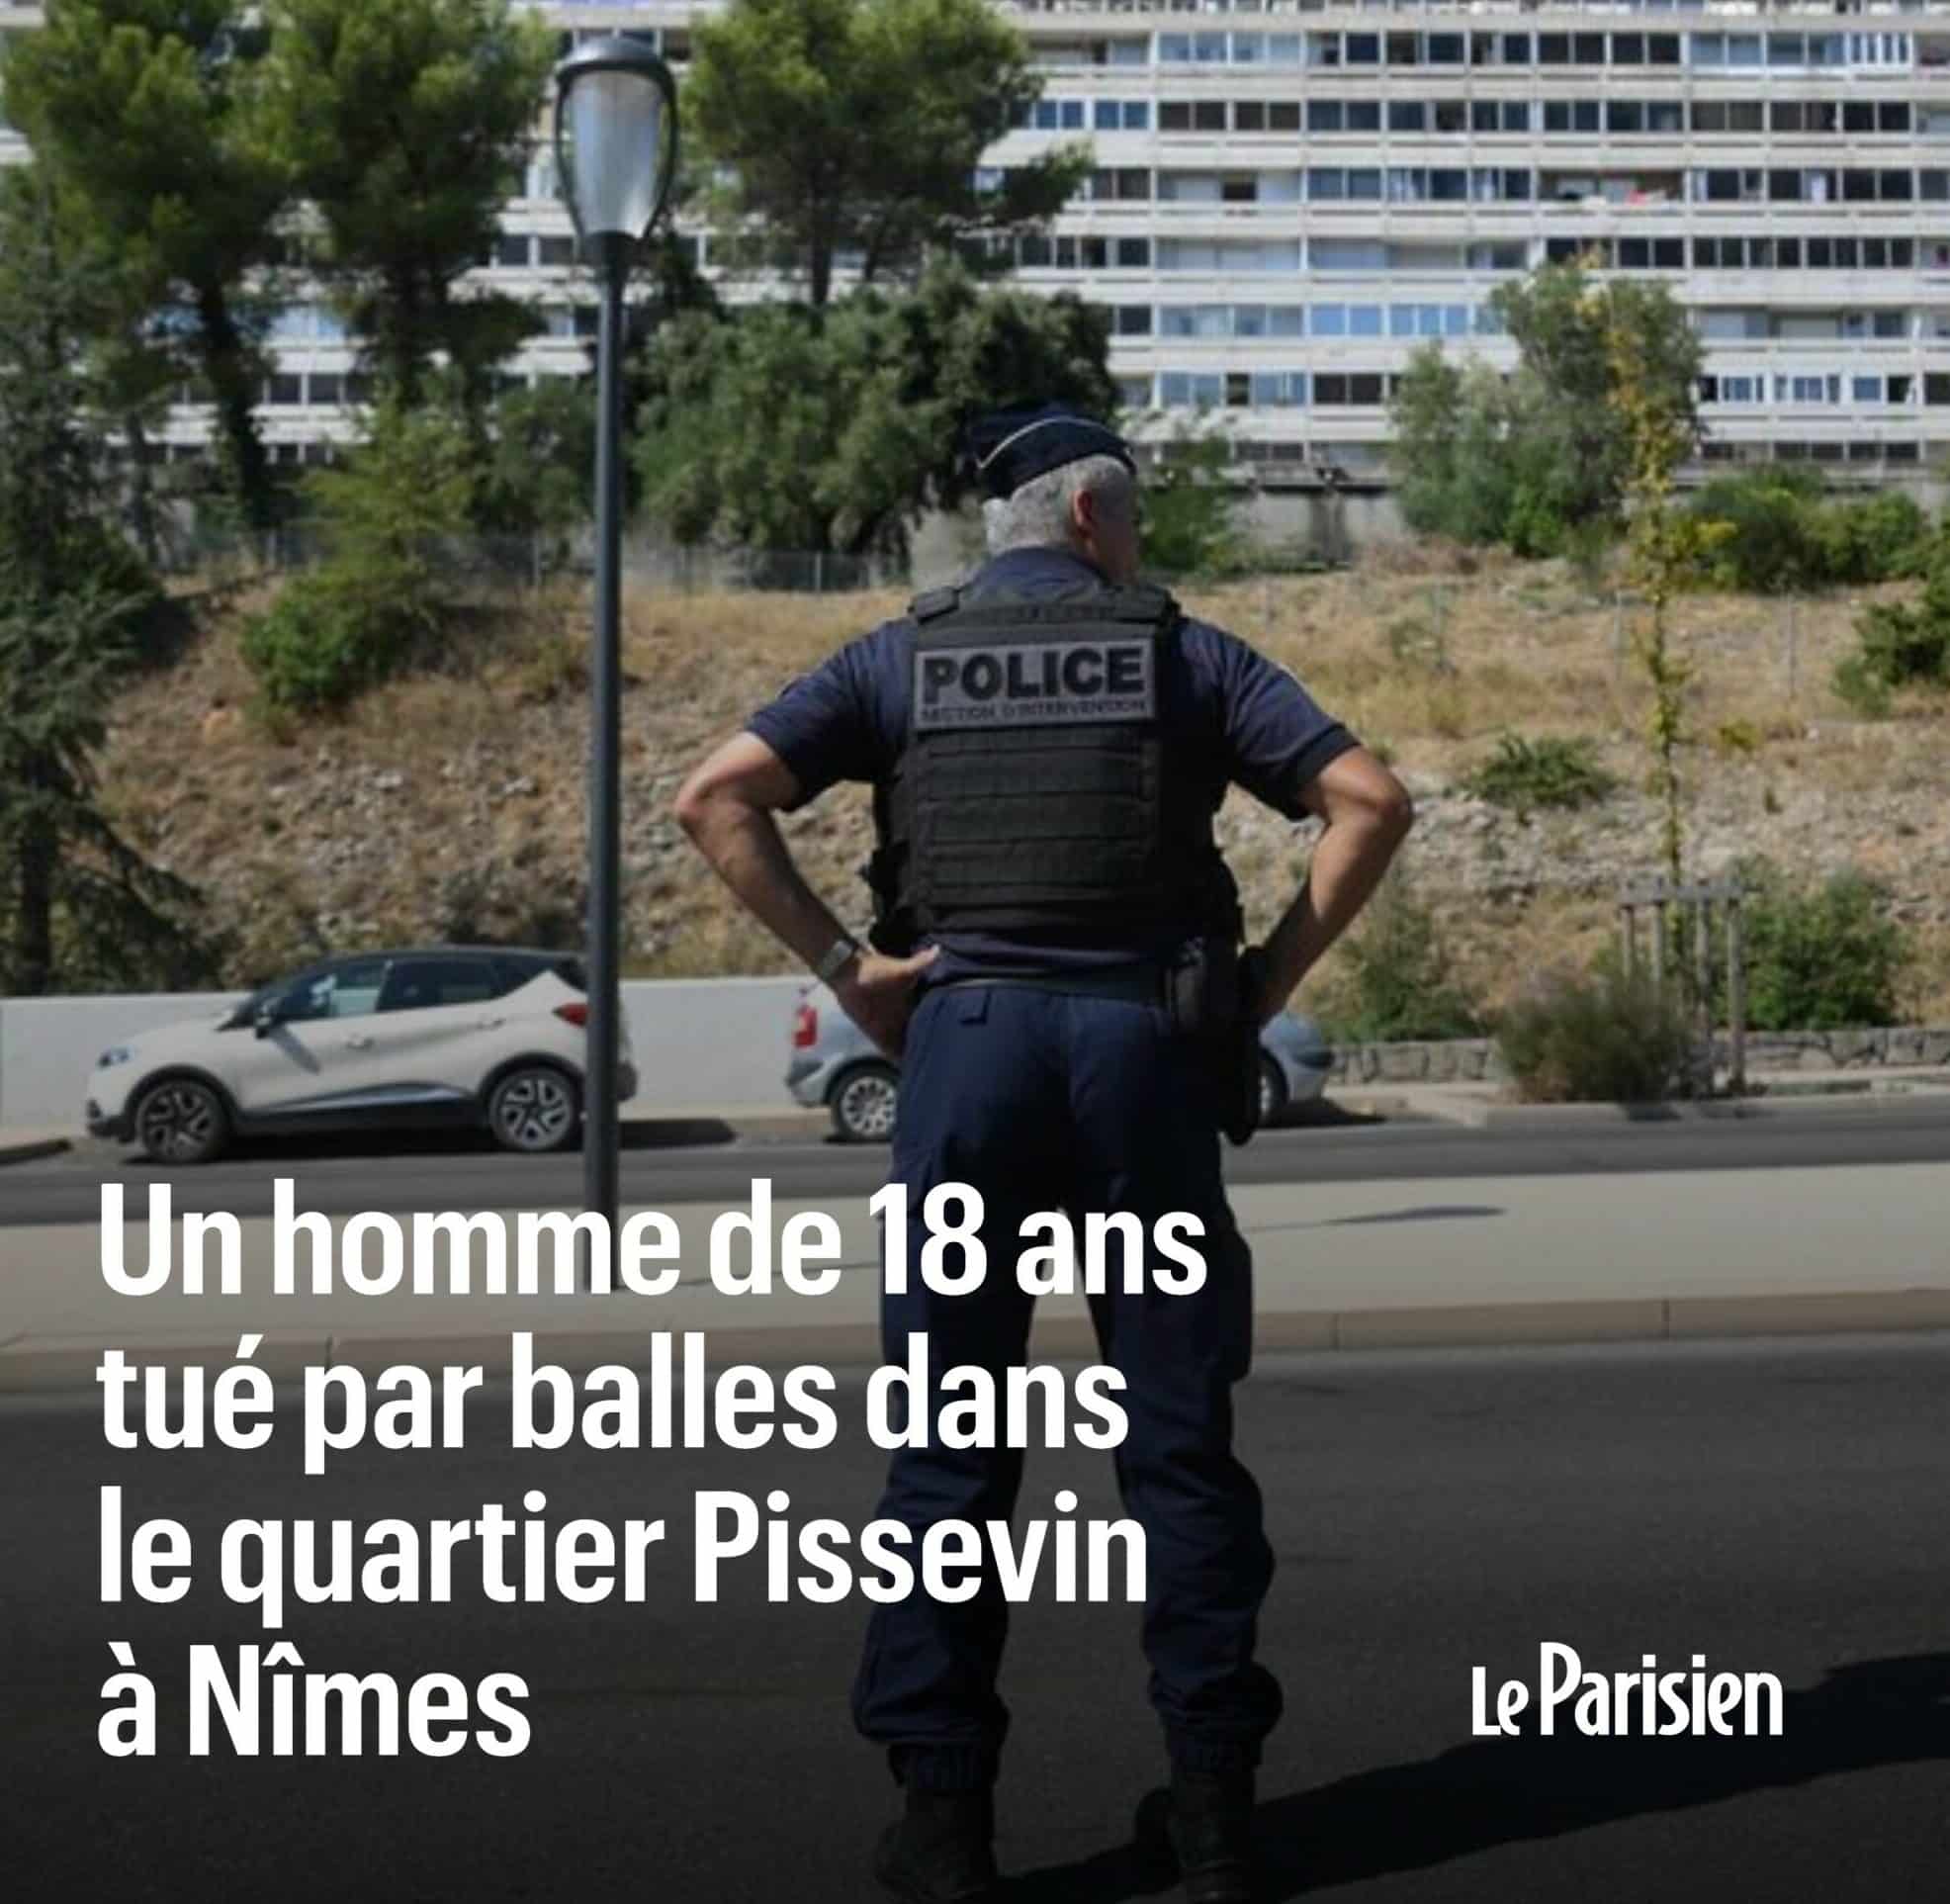 Γαλλία: Δεύτερος νεκρός από πυροβολισμούς στην πόλη Νιμ μέσα σε μία εβδομάδα